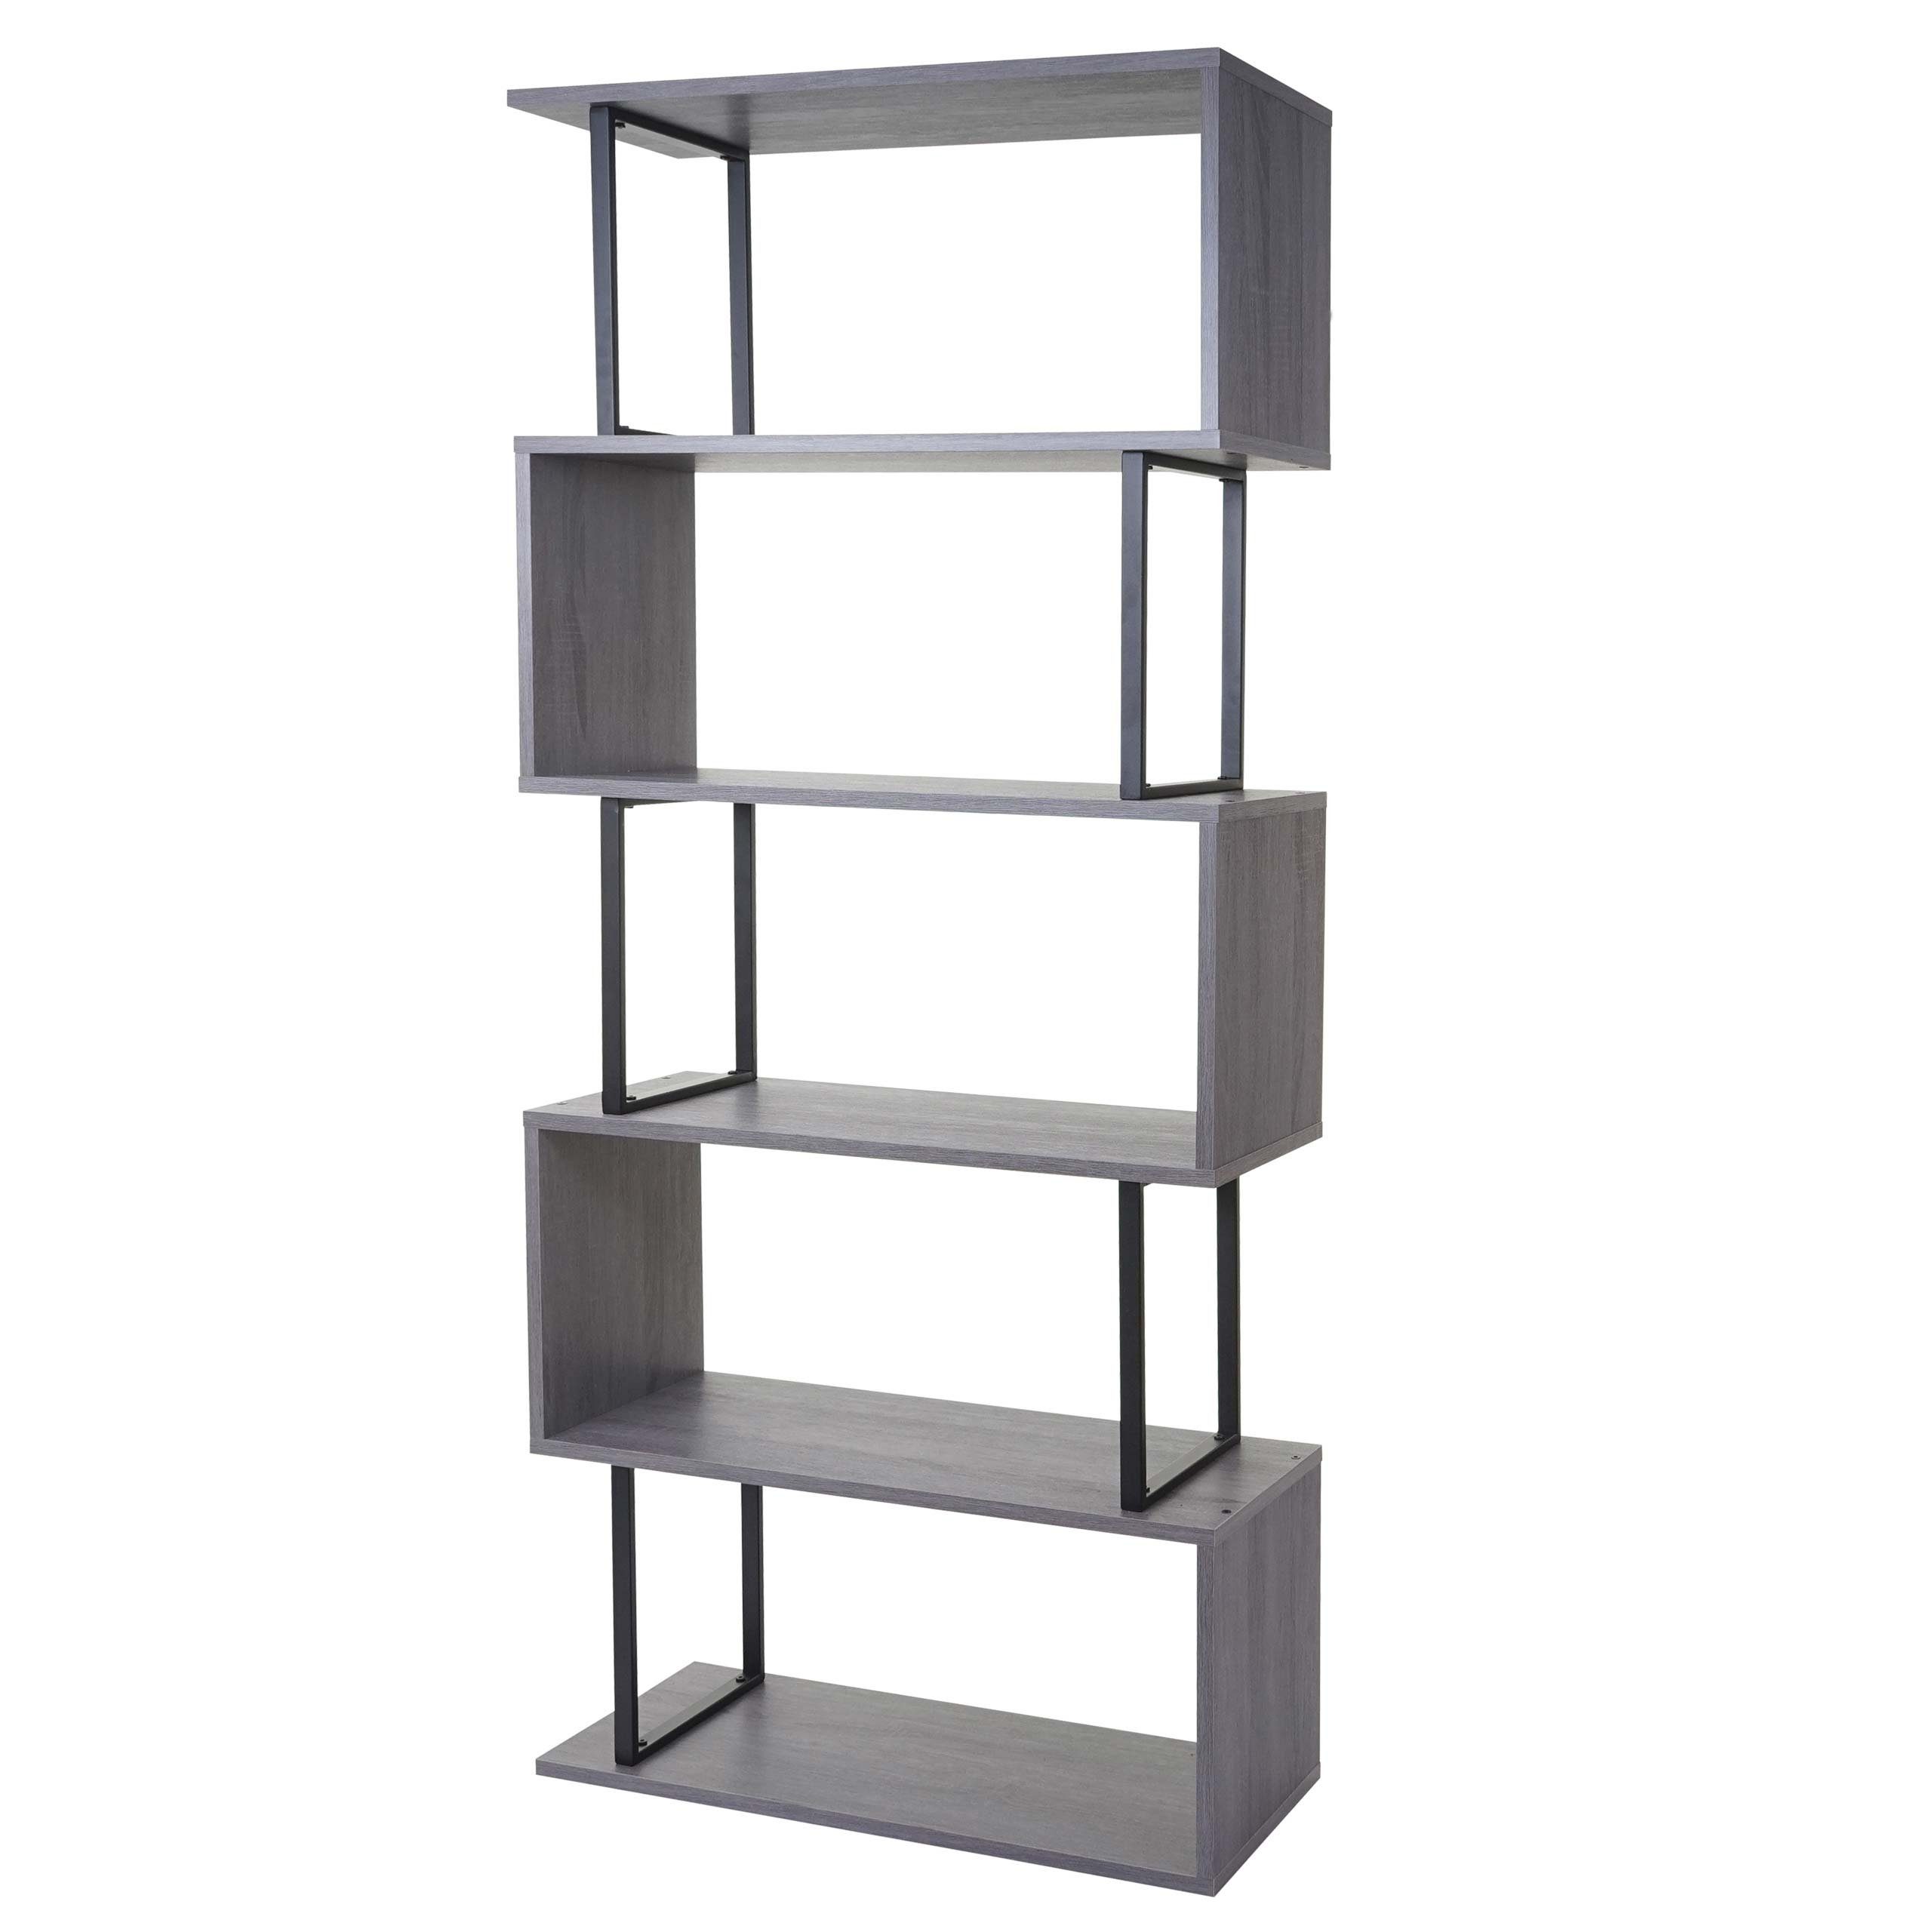 MCW Bücherregal MCW-A27-b, Oberfläche mit 3D Struktur, Viel Stauraum, Inklusive Bodenschoner grau, Metall schwarz | grau